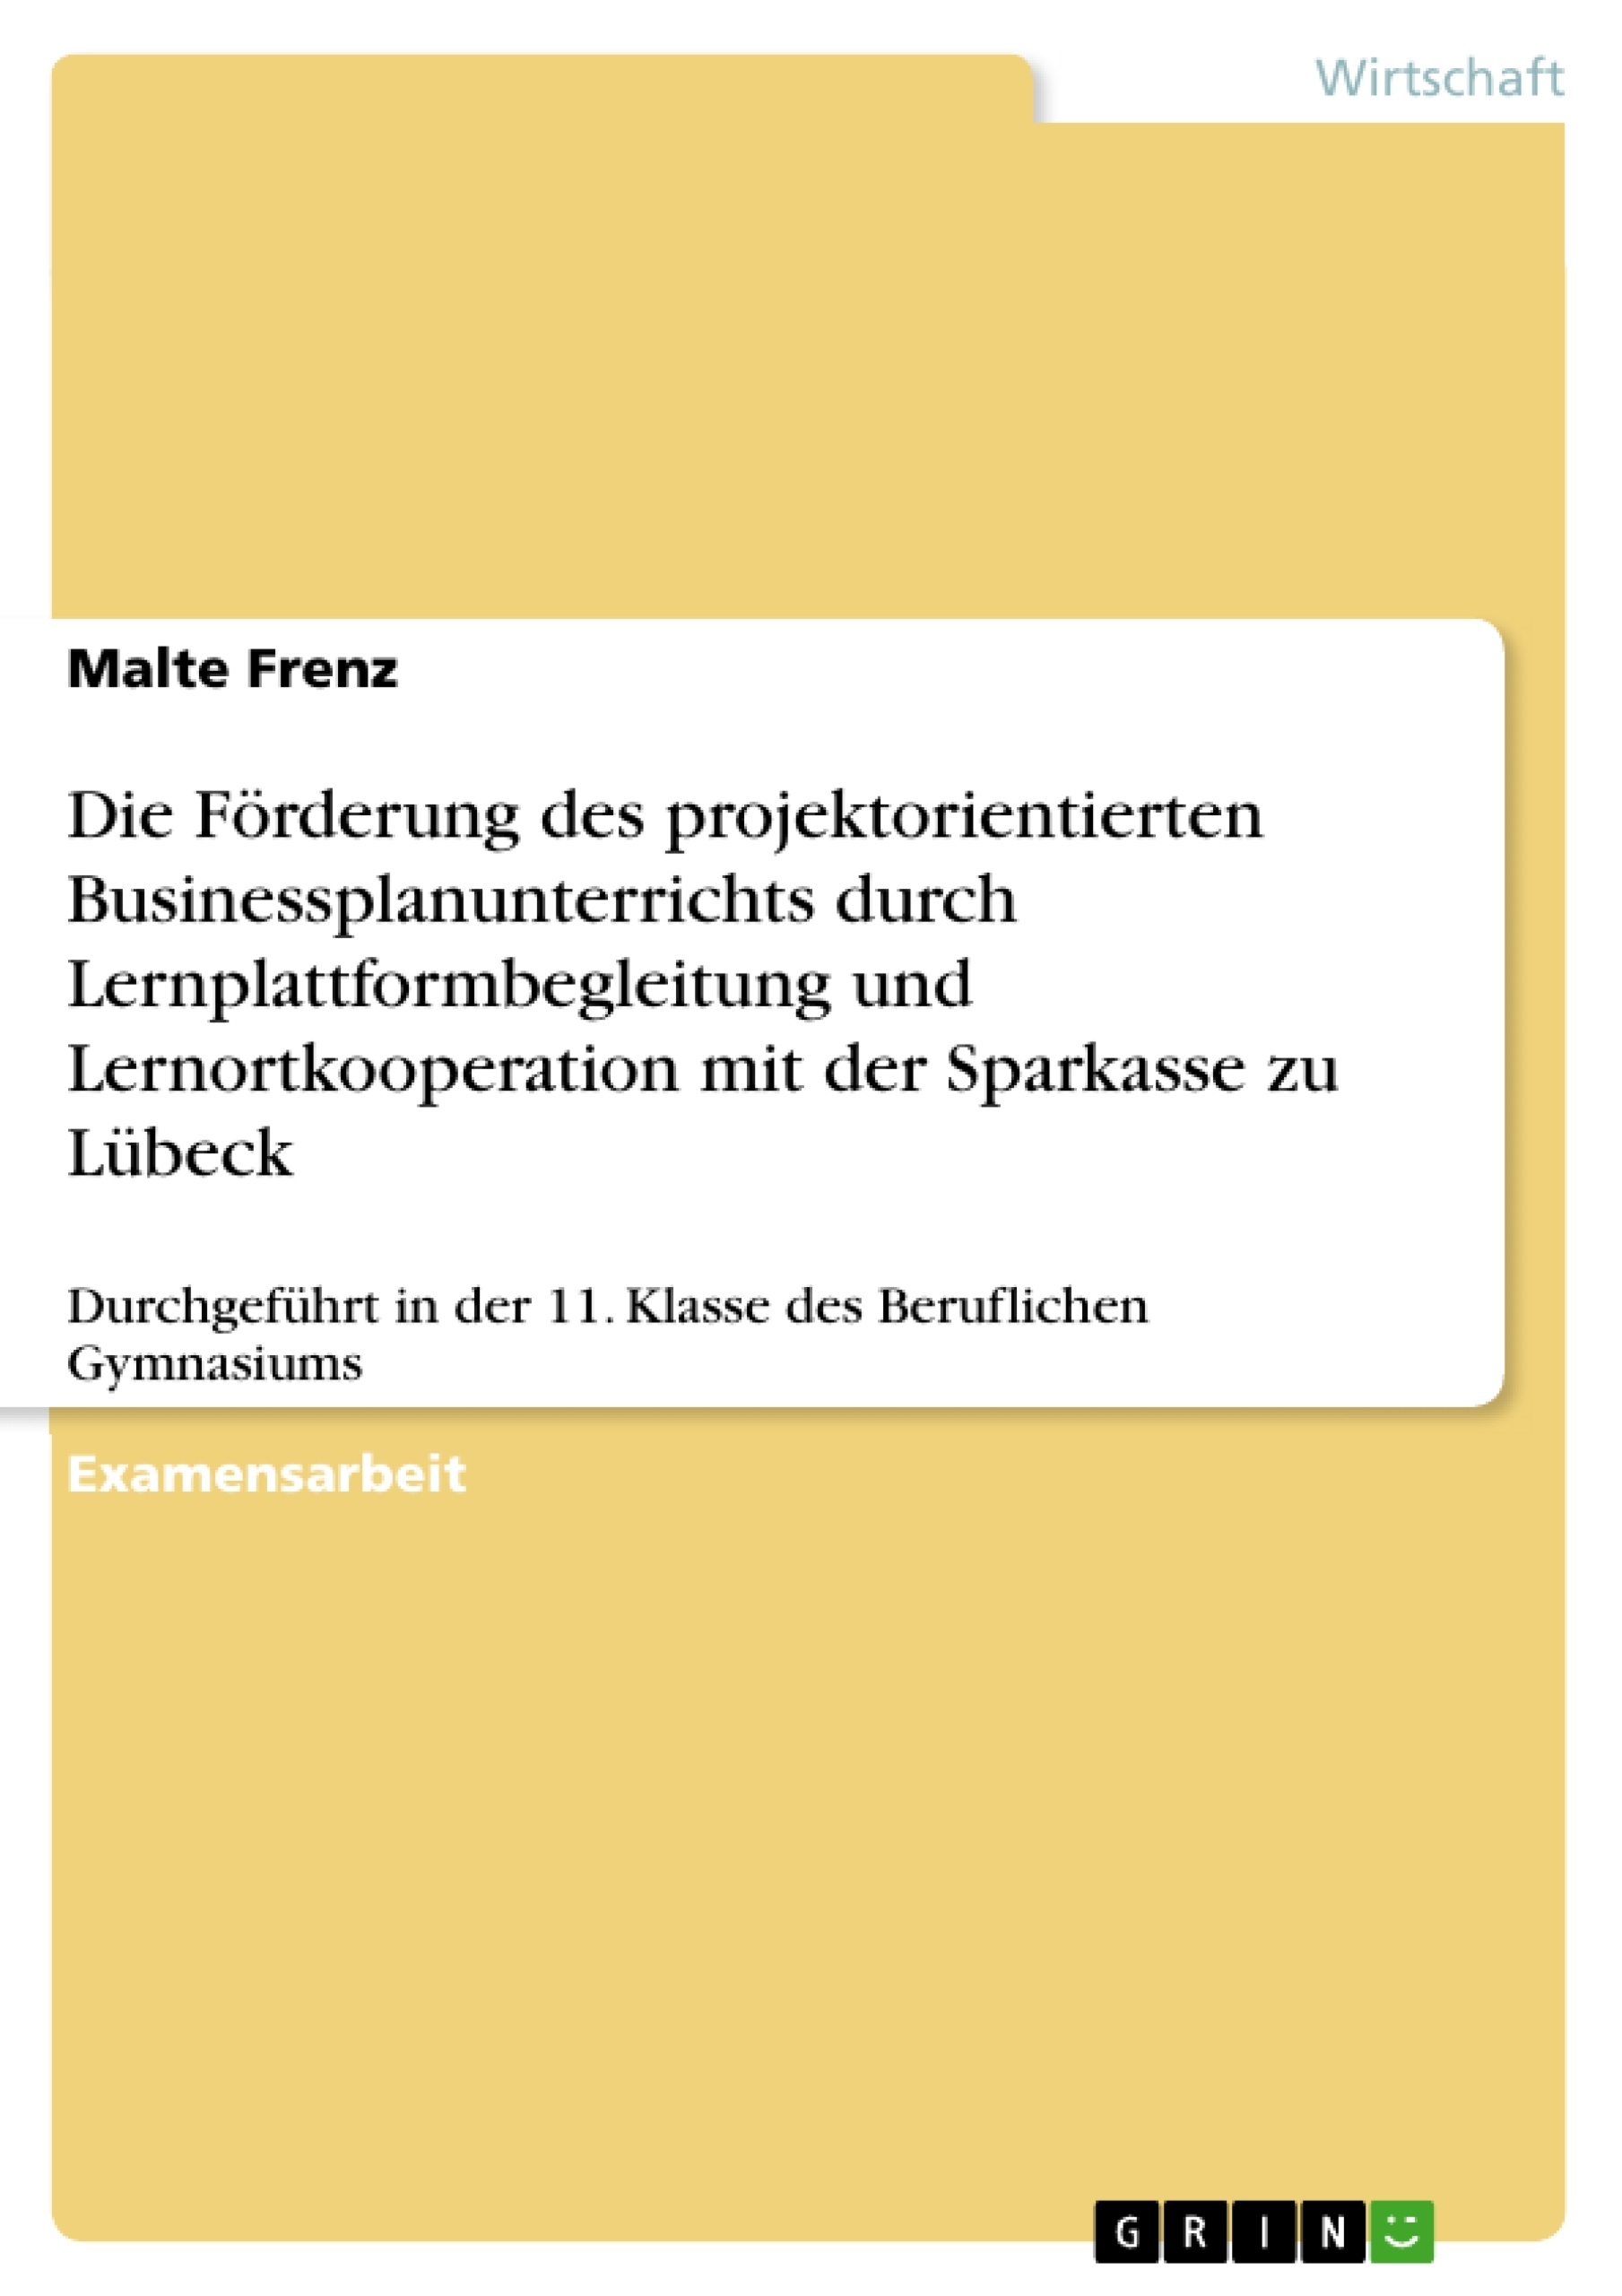 Title: Die Förderung des projektorientierten Businessplanunterrichts durch Lernplattformbegleitung und Lernortkooperation mit der Sparkasse zu Lübeck